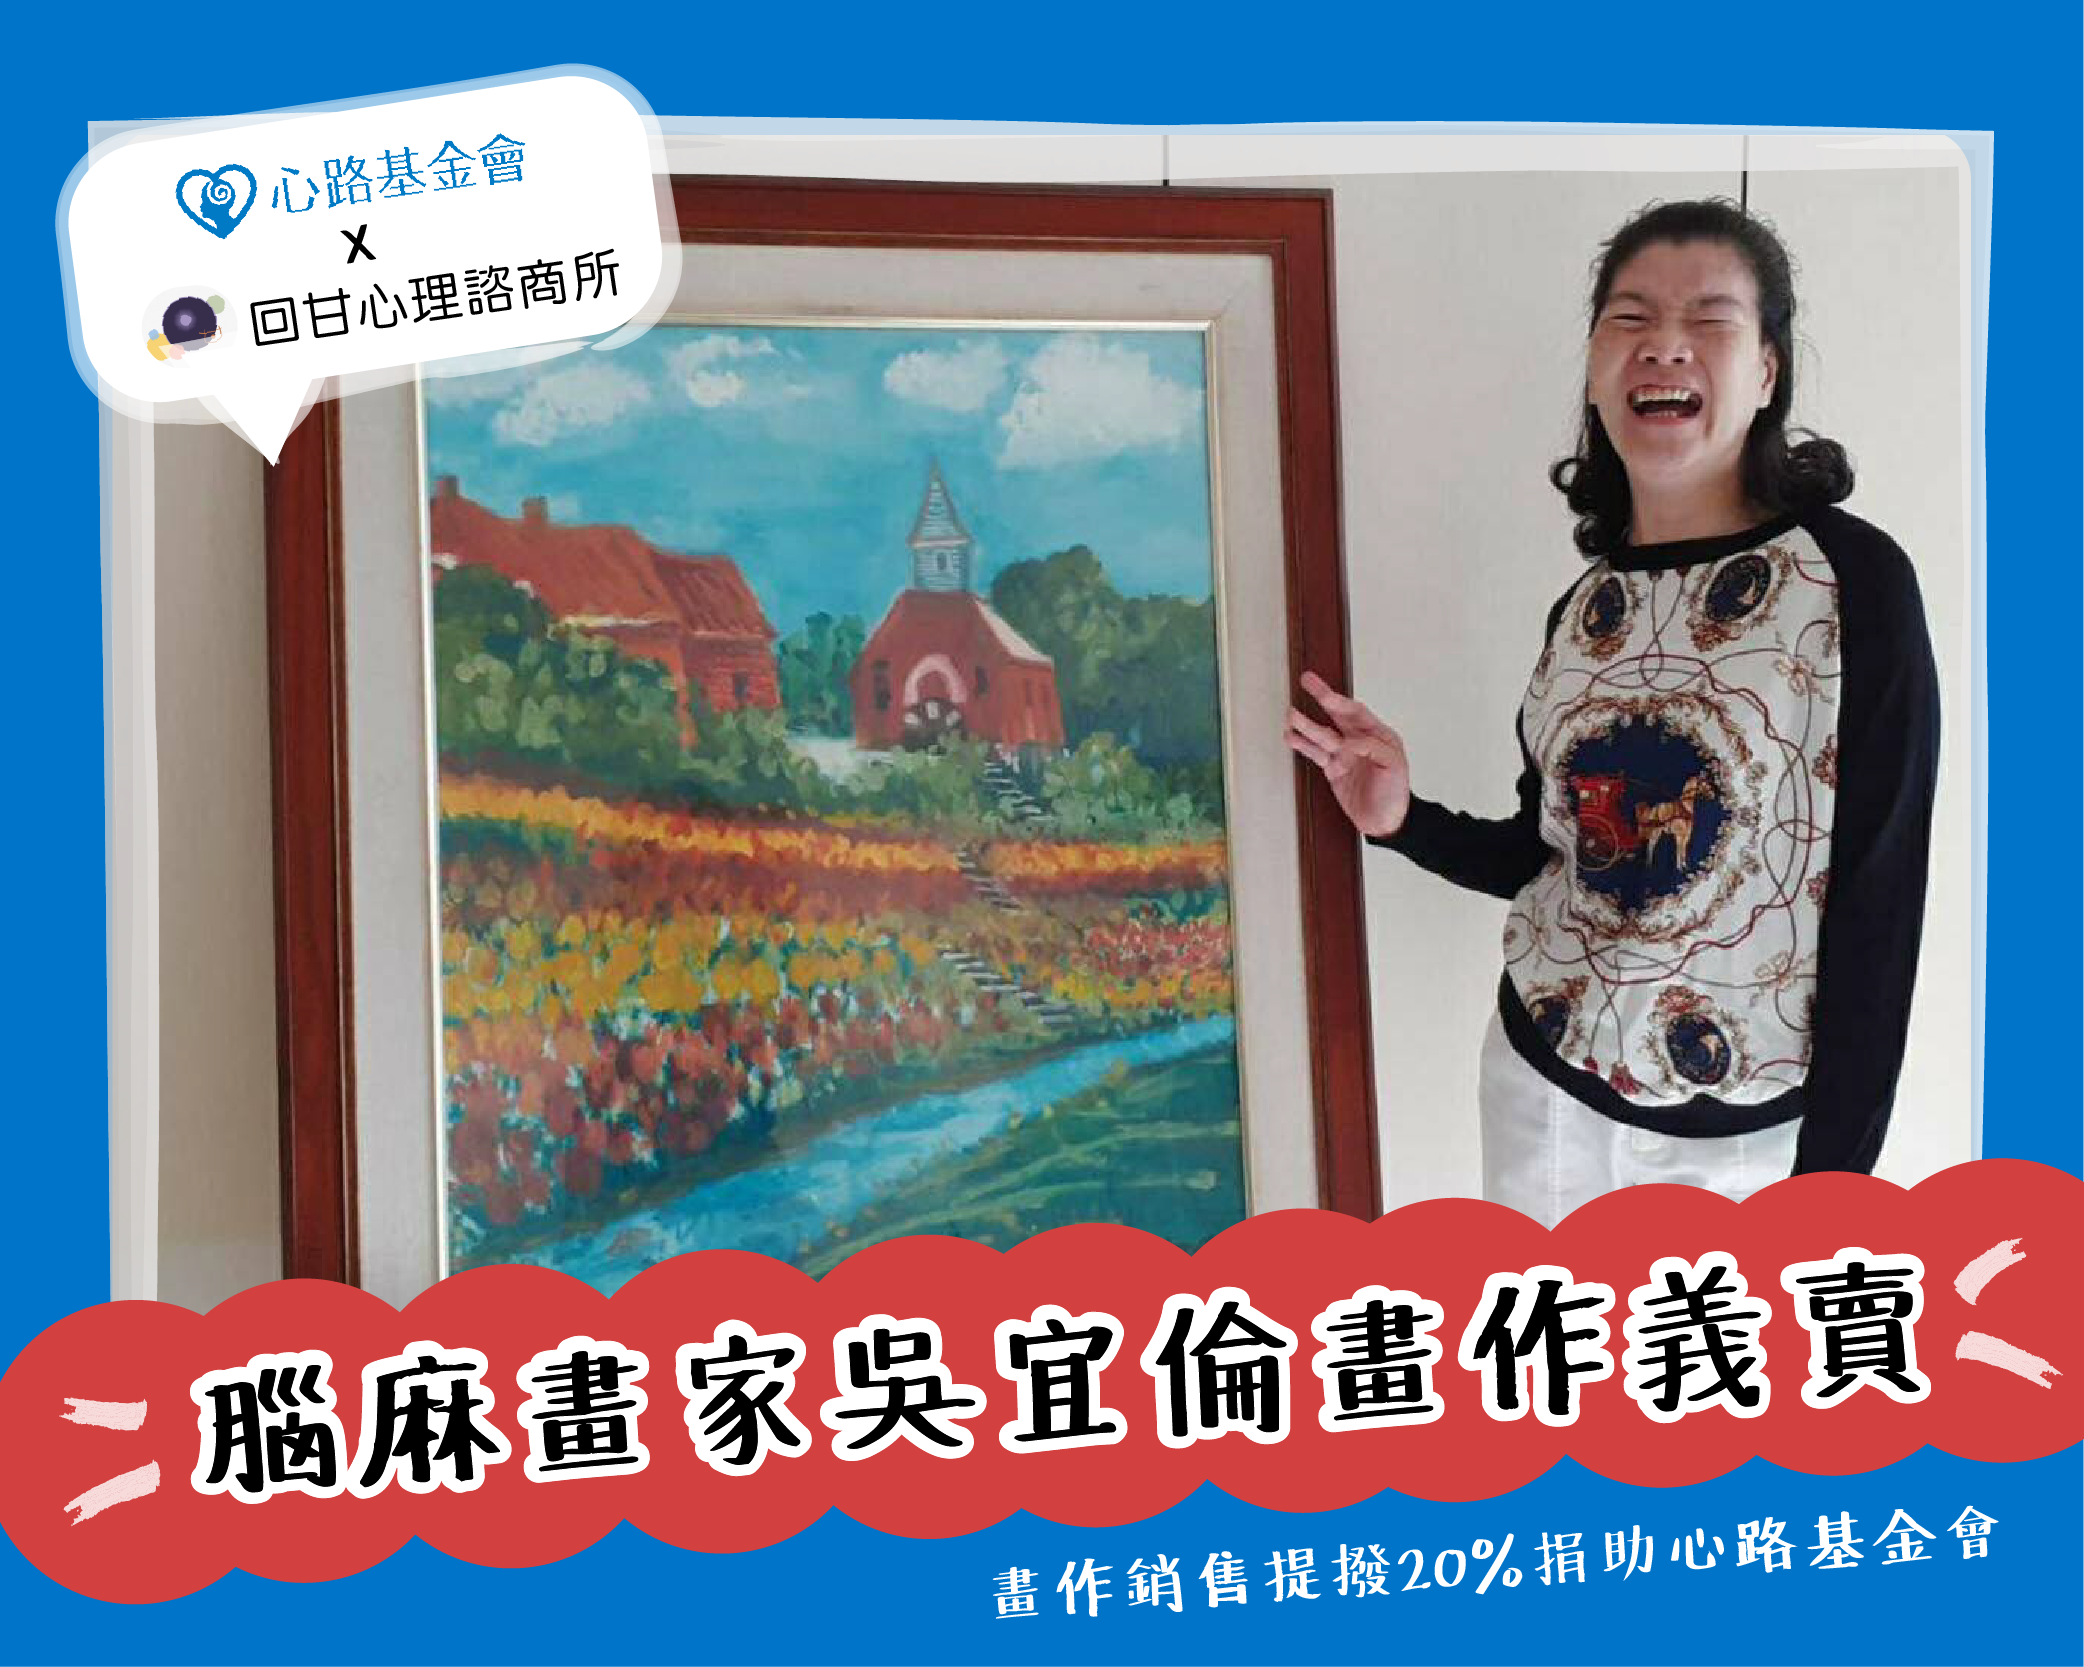 【高雄】腦麻畫家吳宜倫，疫情中感恩與回饋 義賣畫作捐心路，幫助籌募服務經費 